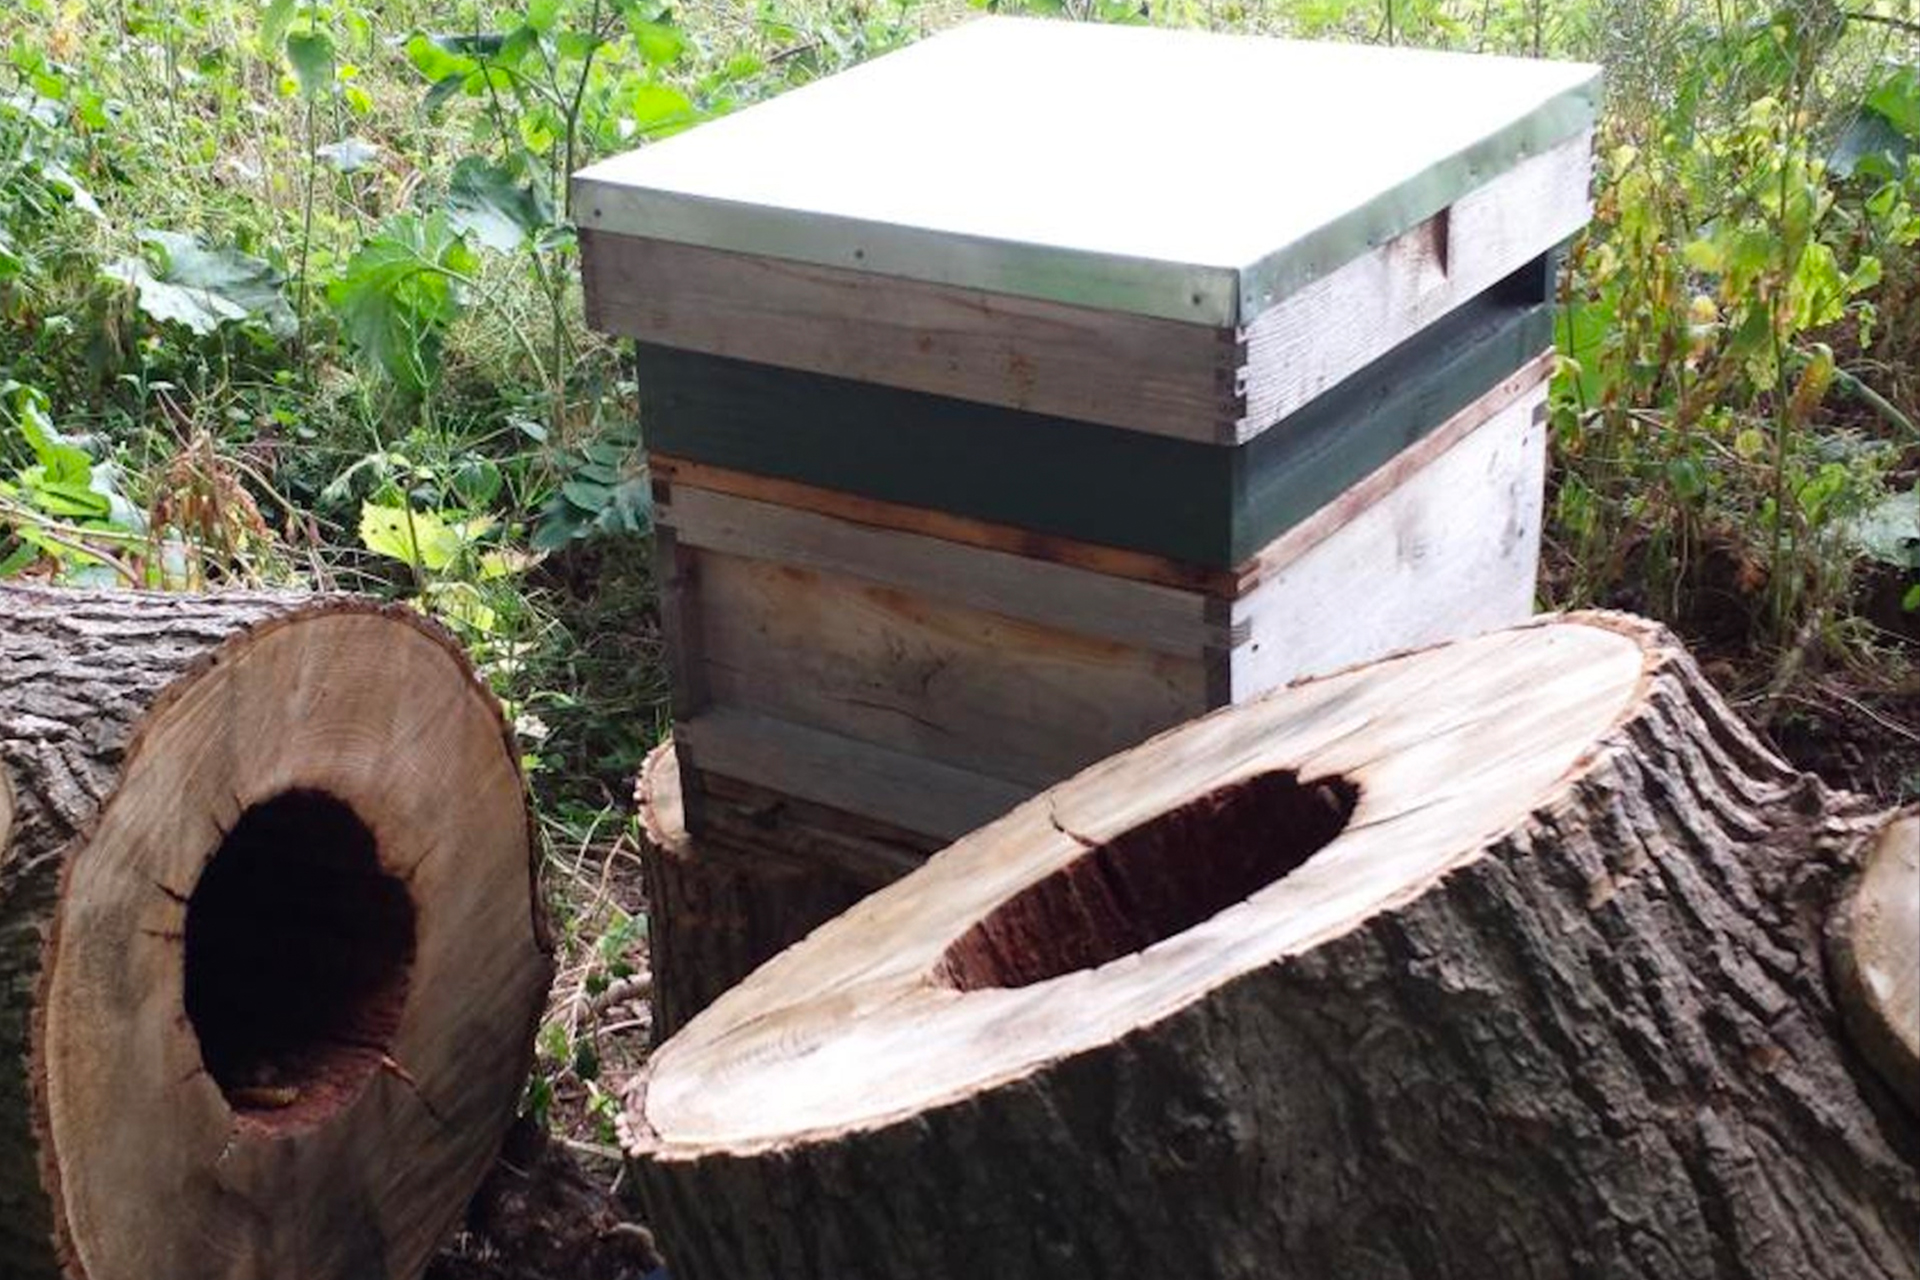 ممارساتنا الخاطئة في تربية النحل تضر بها | علوم – البوكس نيوز